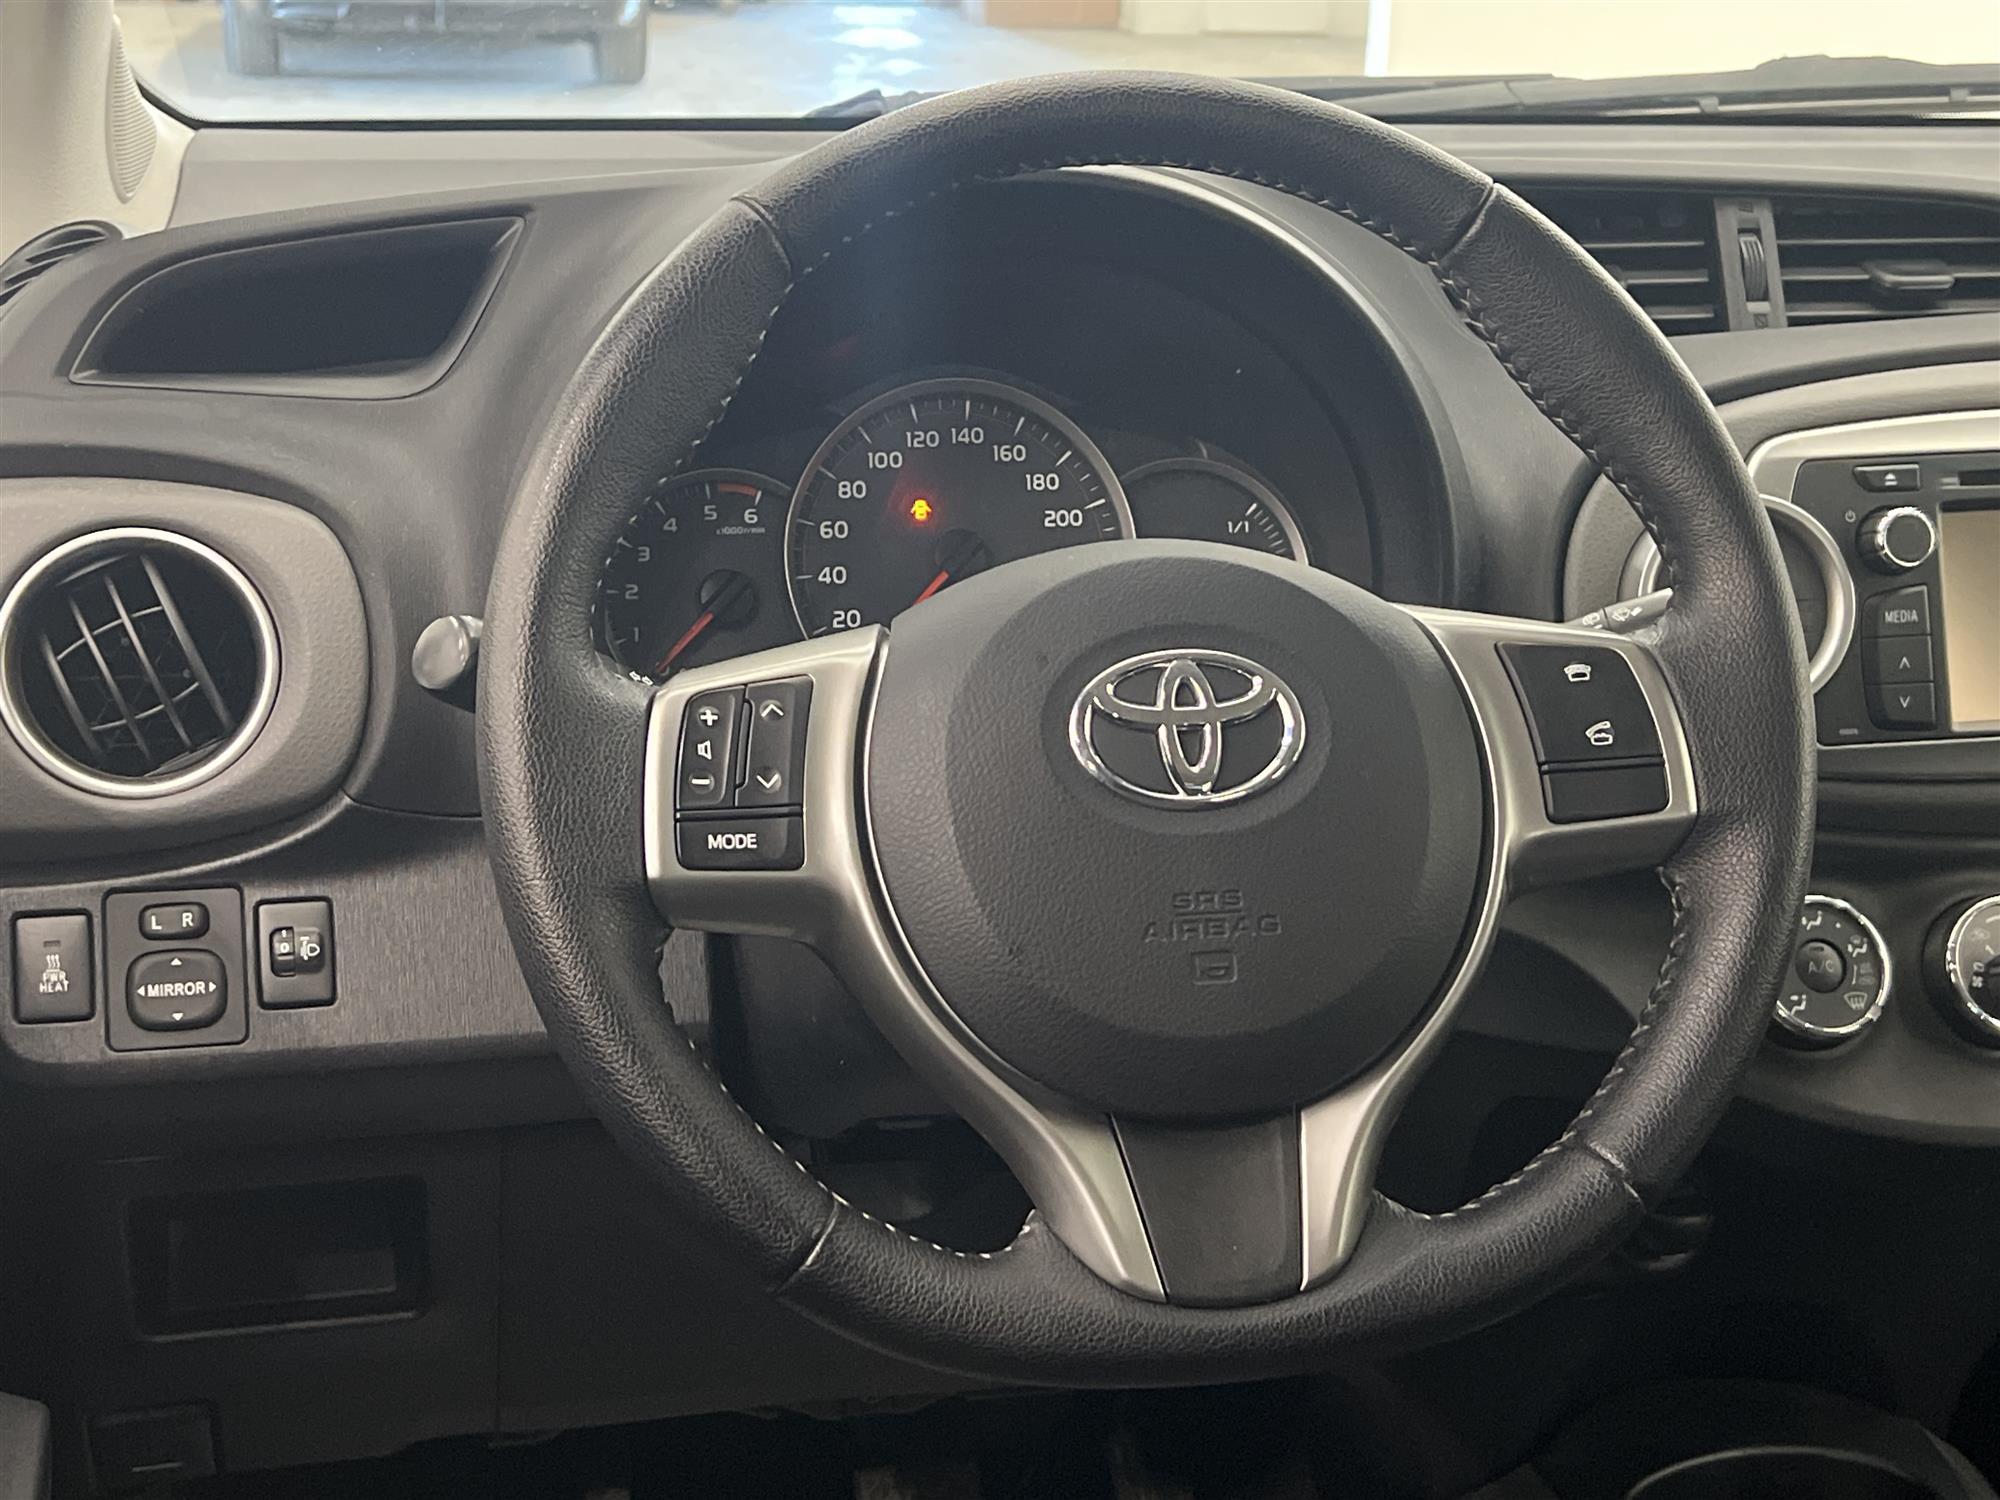 Toyota Yaris 1.4 D-4D 90hk B-Kam Låg Skatt 0,39/mil